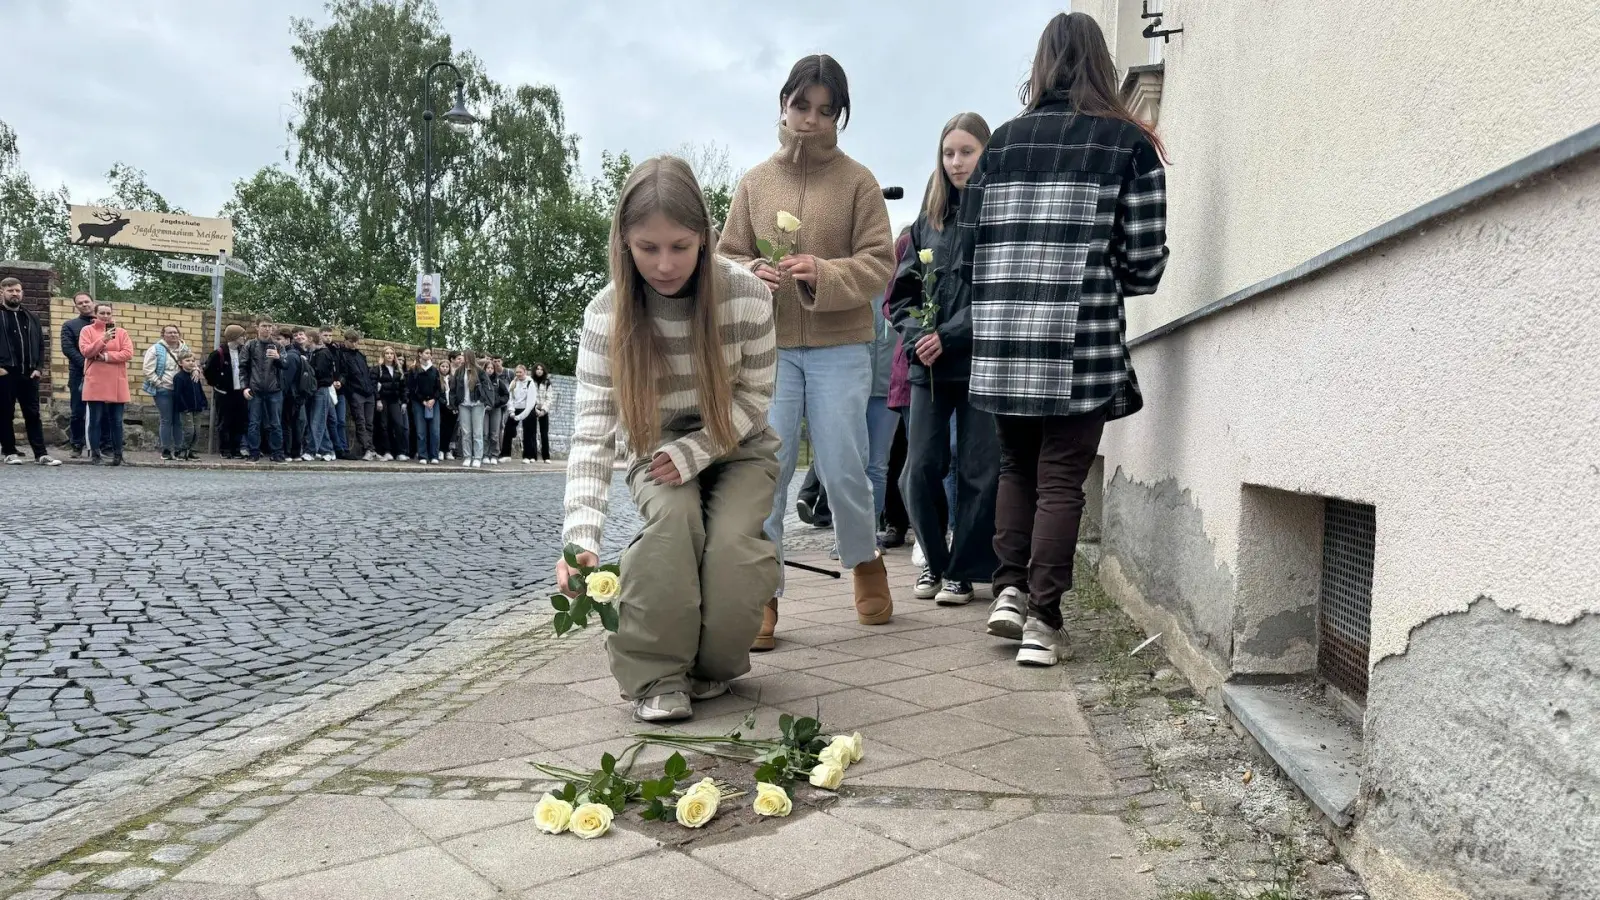 Die Schülerinnen und Schüler legten weiße Rosen am Stolperstein nieder - das Symbol des Geschwister-Scholl-Gymnasiums.  (Foto: Daniel Große)